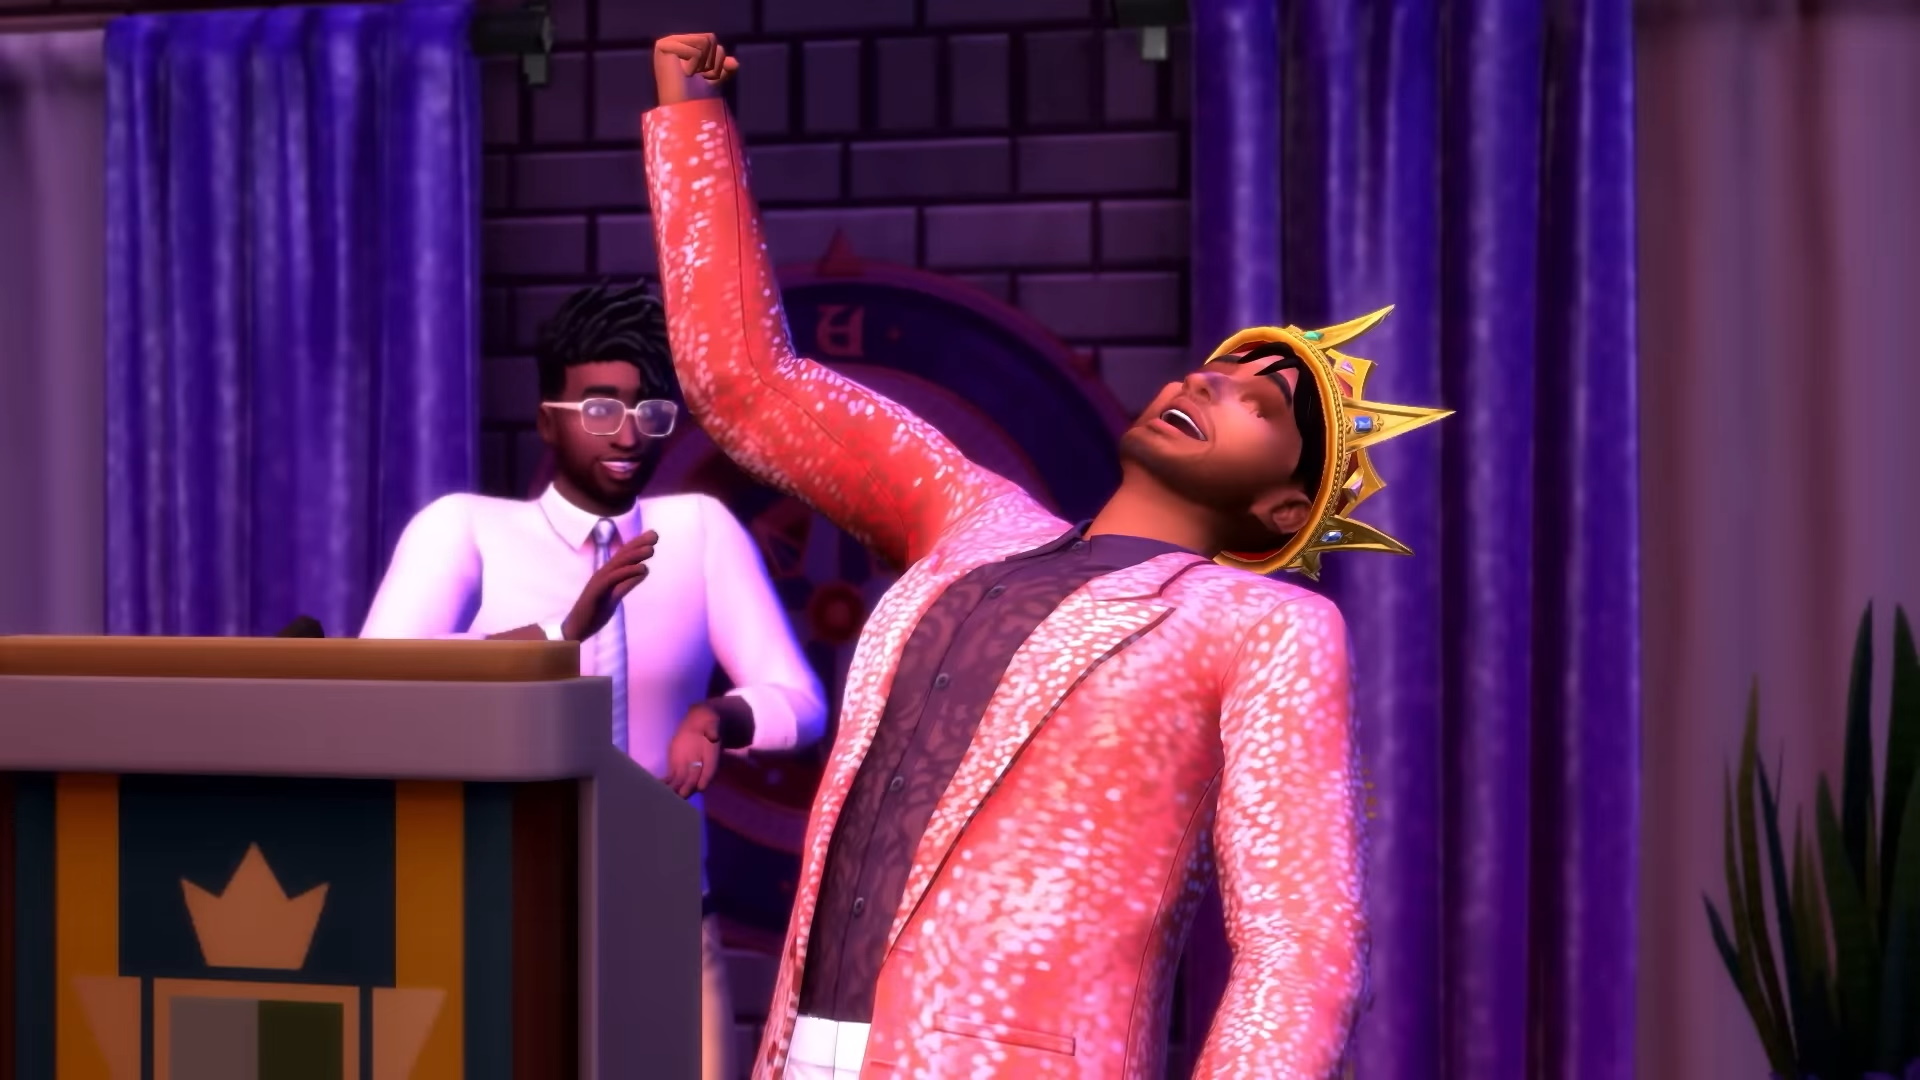 Die neue Sims 4-Erweiterung bietet mehr Anpassungsmöglichkeiten denn je